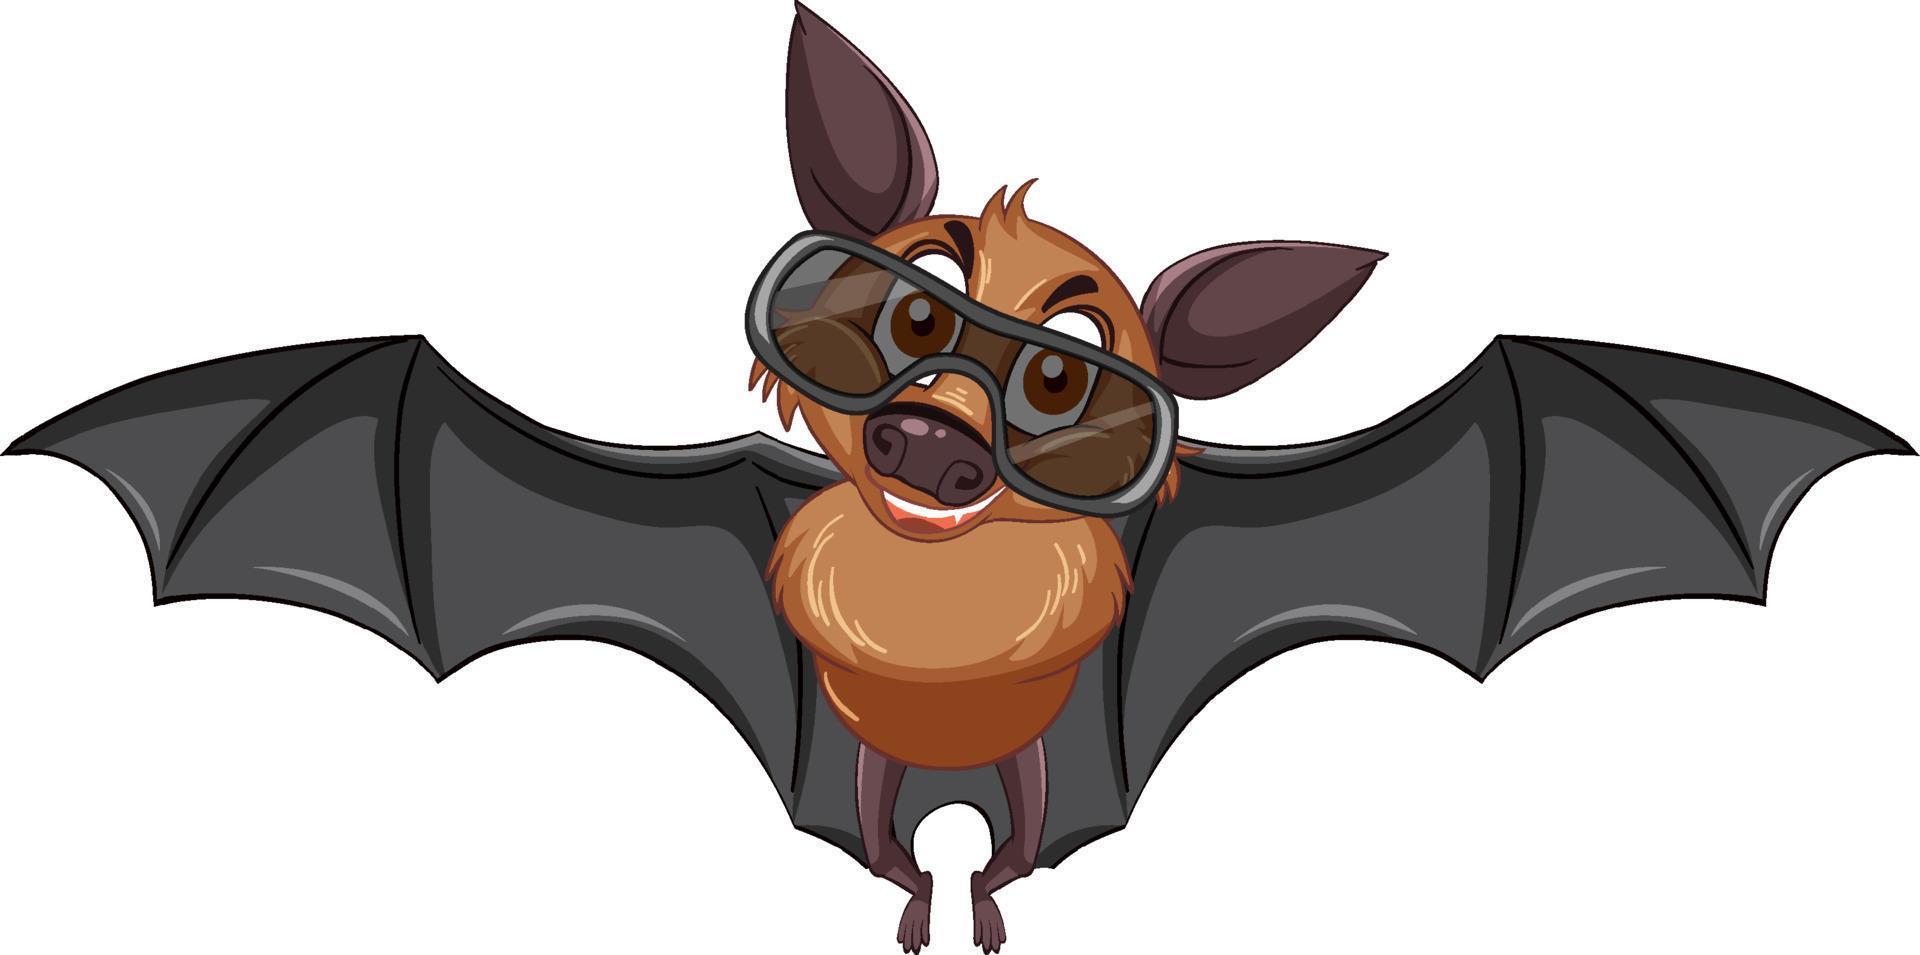 murciélago con gafas de sol personaje de dibujos animados sobre fondo blanco vector